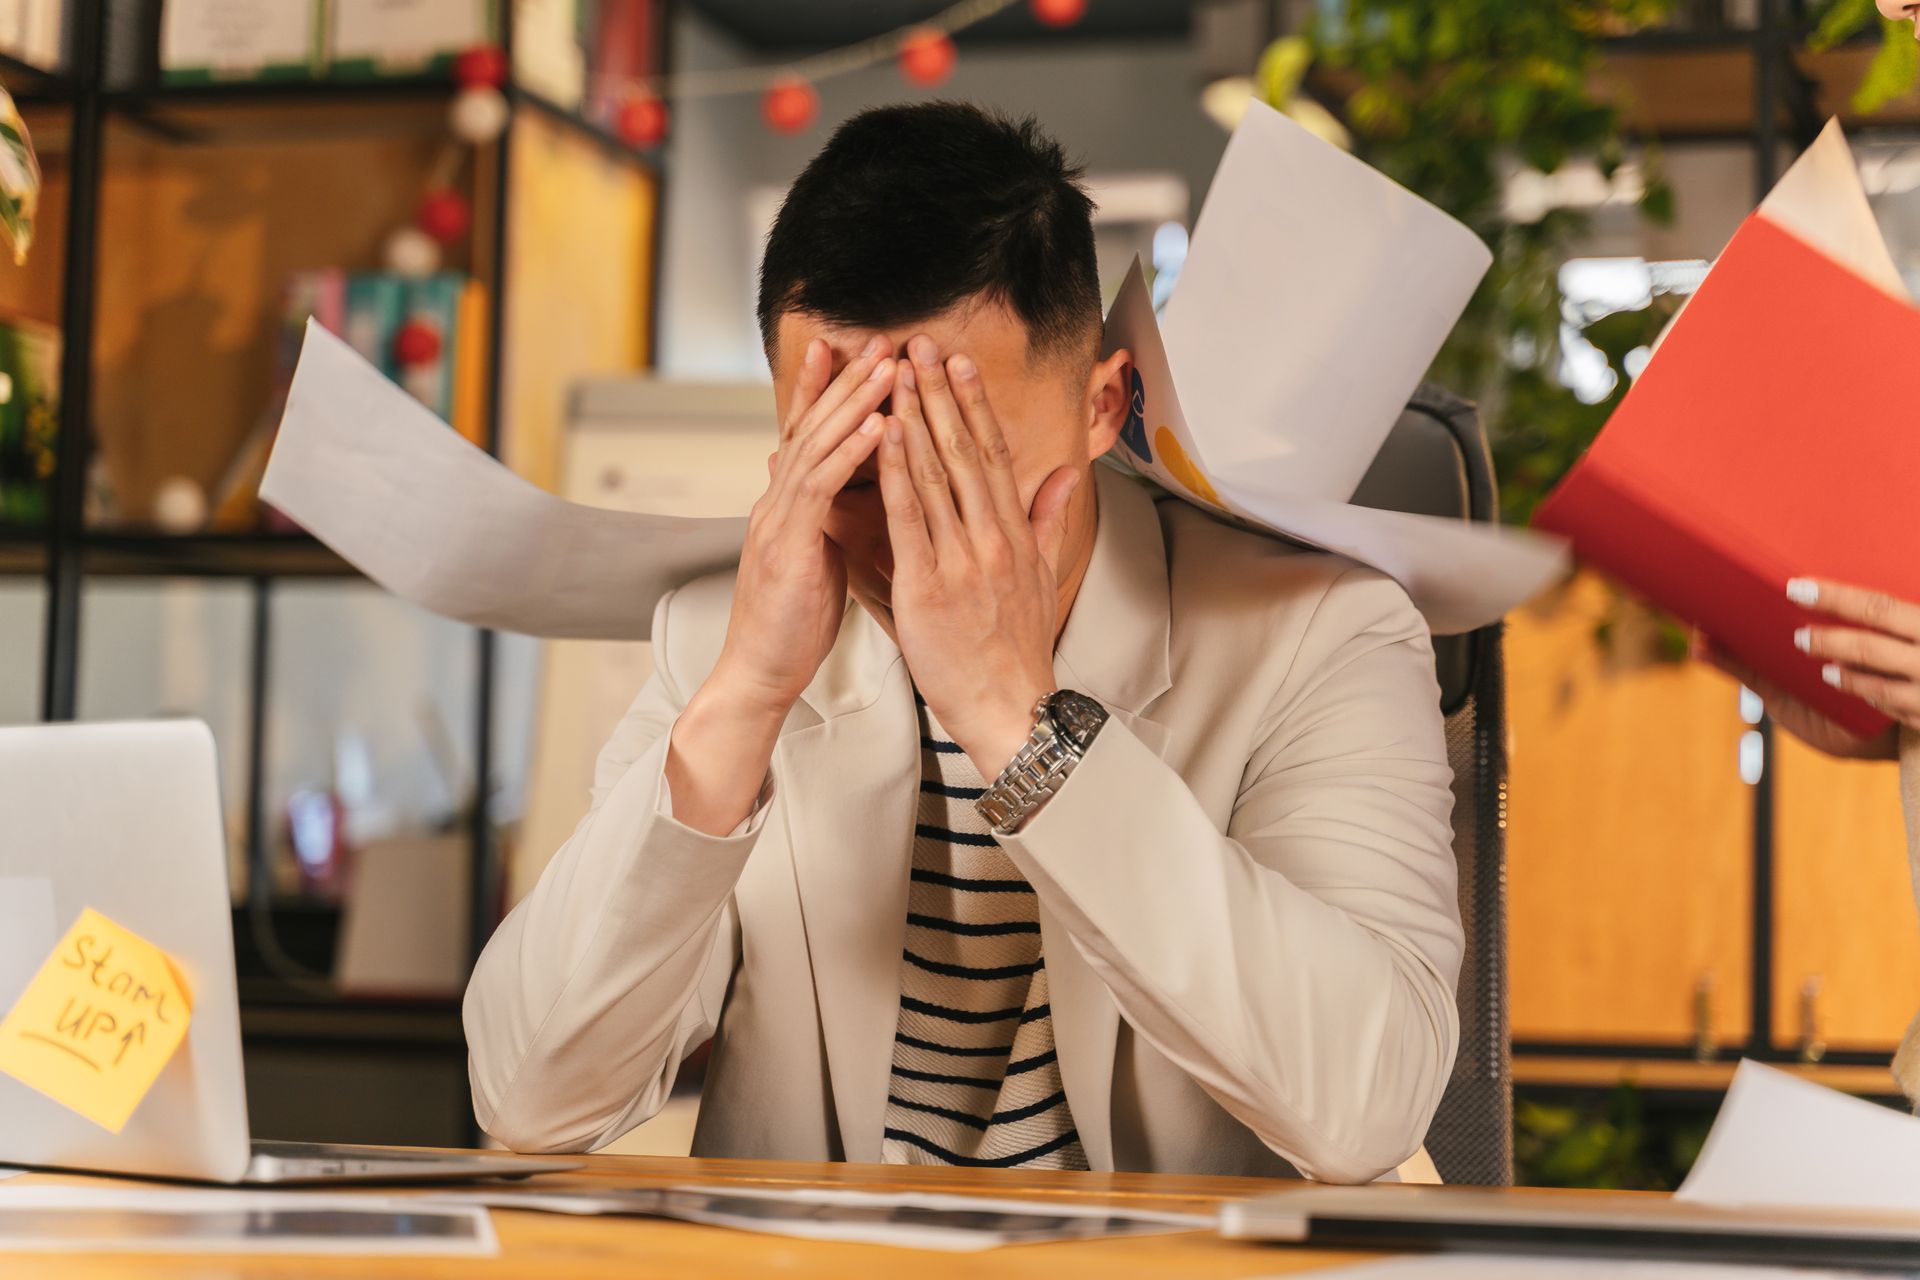 Employee burnout at work